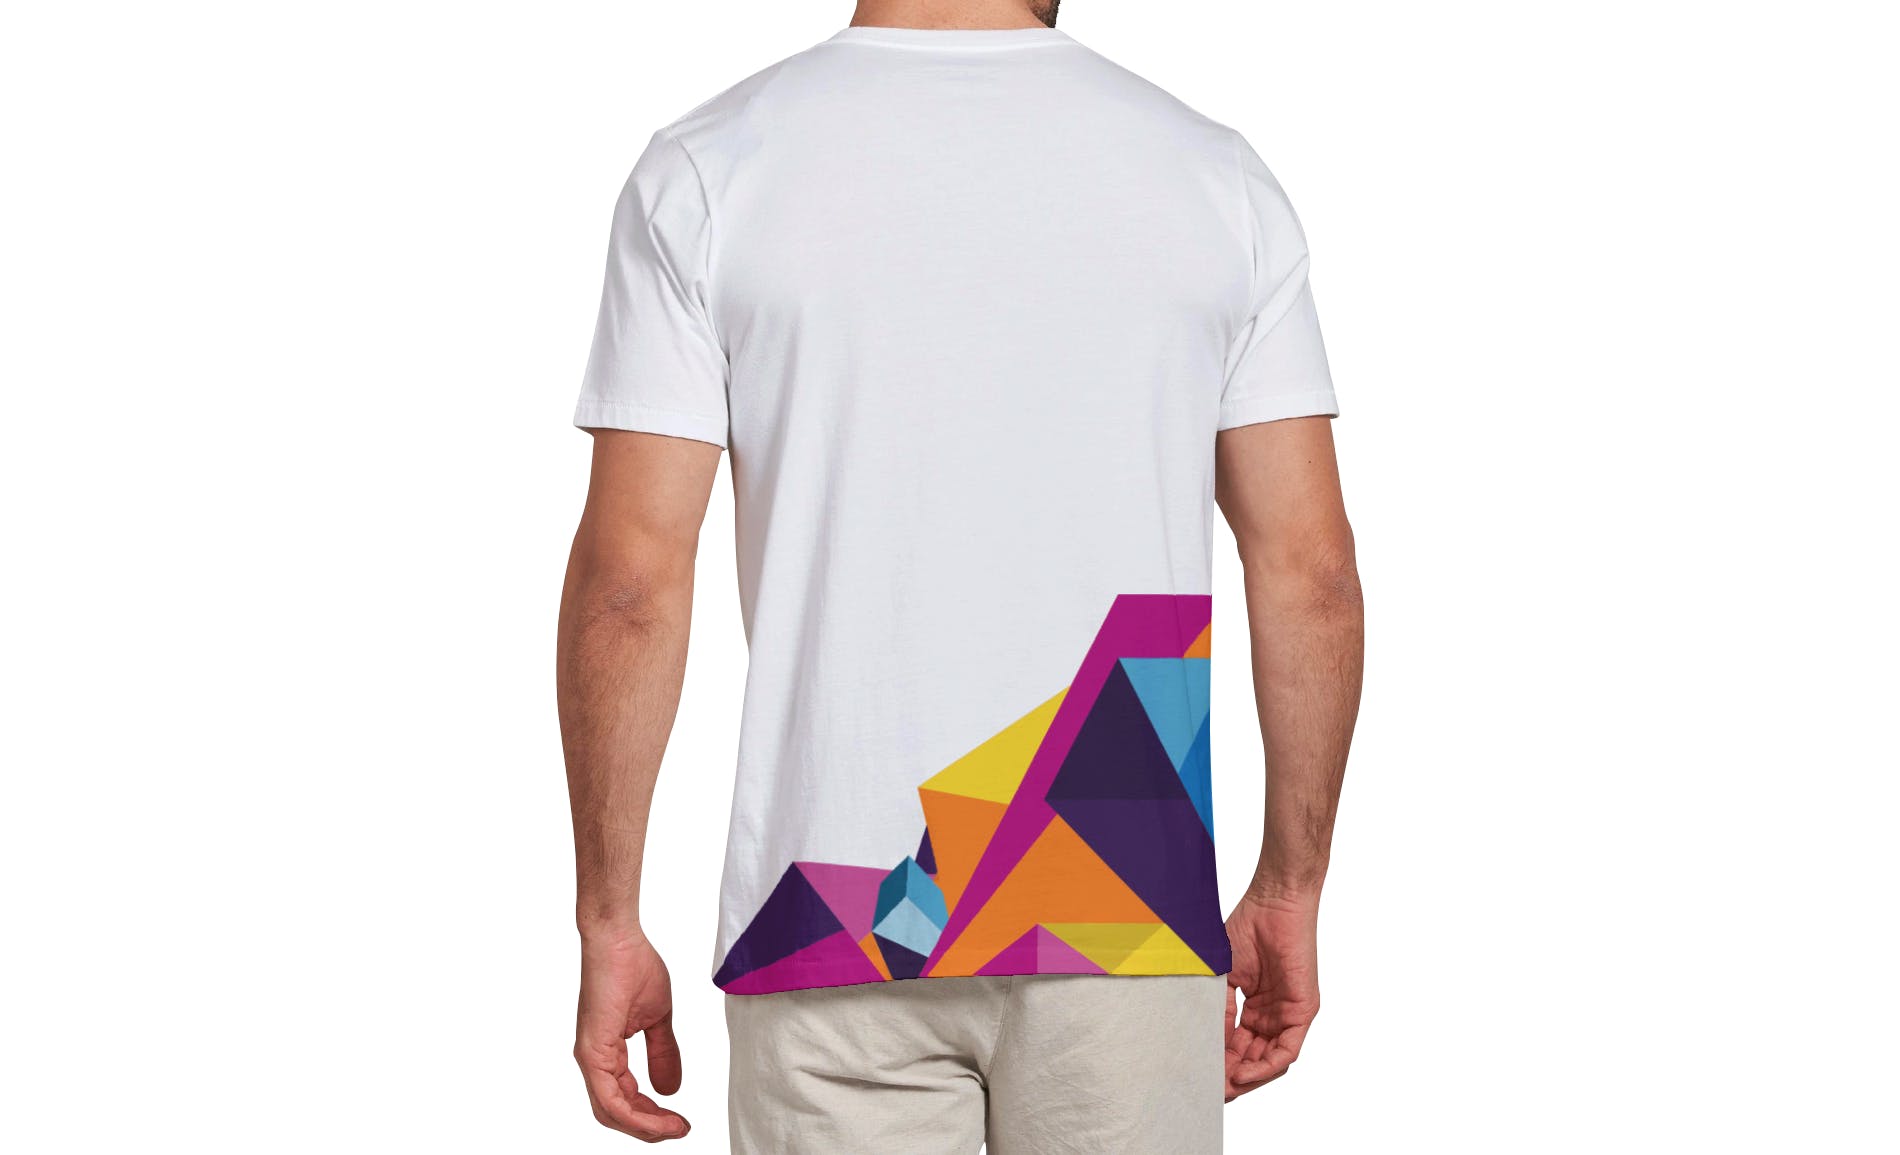 男士T恤印花设计效果图样机大洋岛精选v03 T-shirt Mockup Vol 03插图11